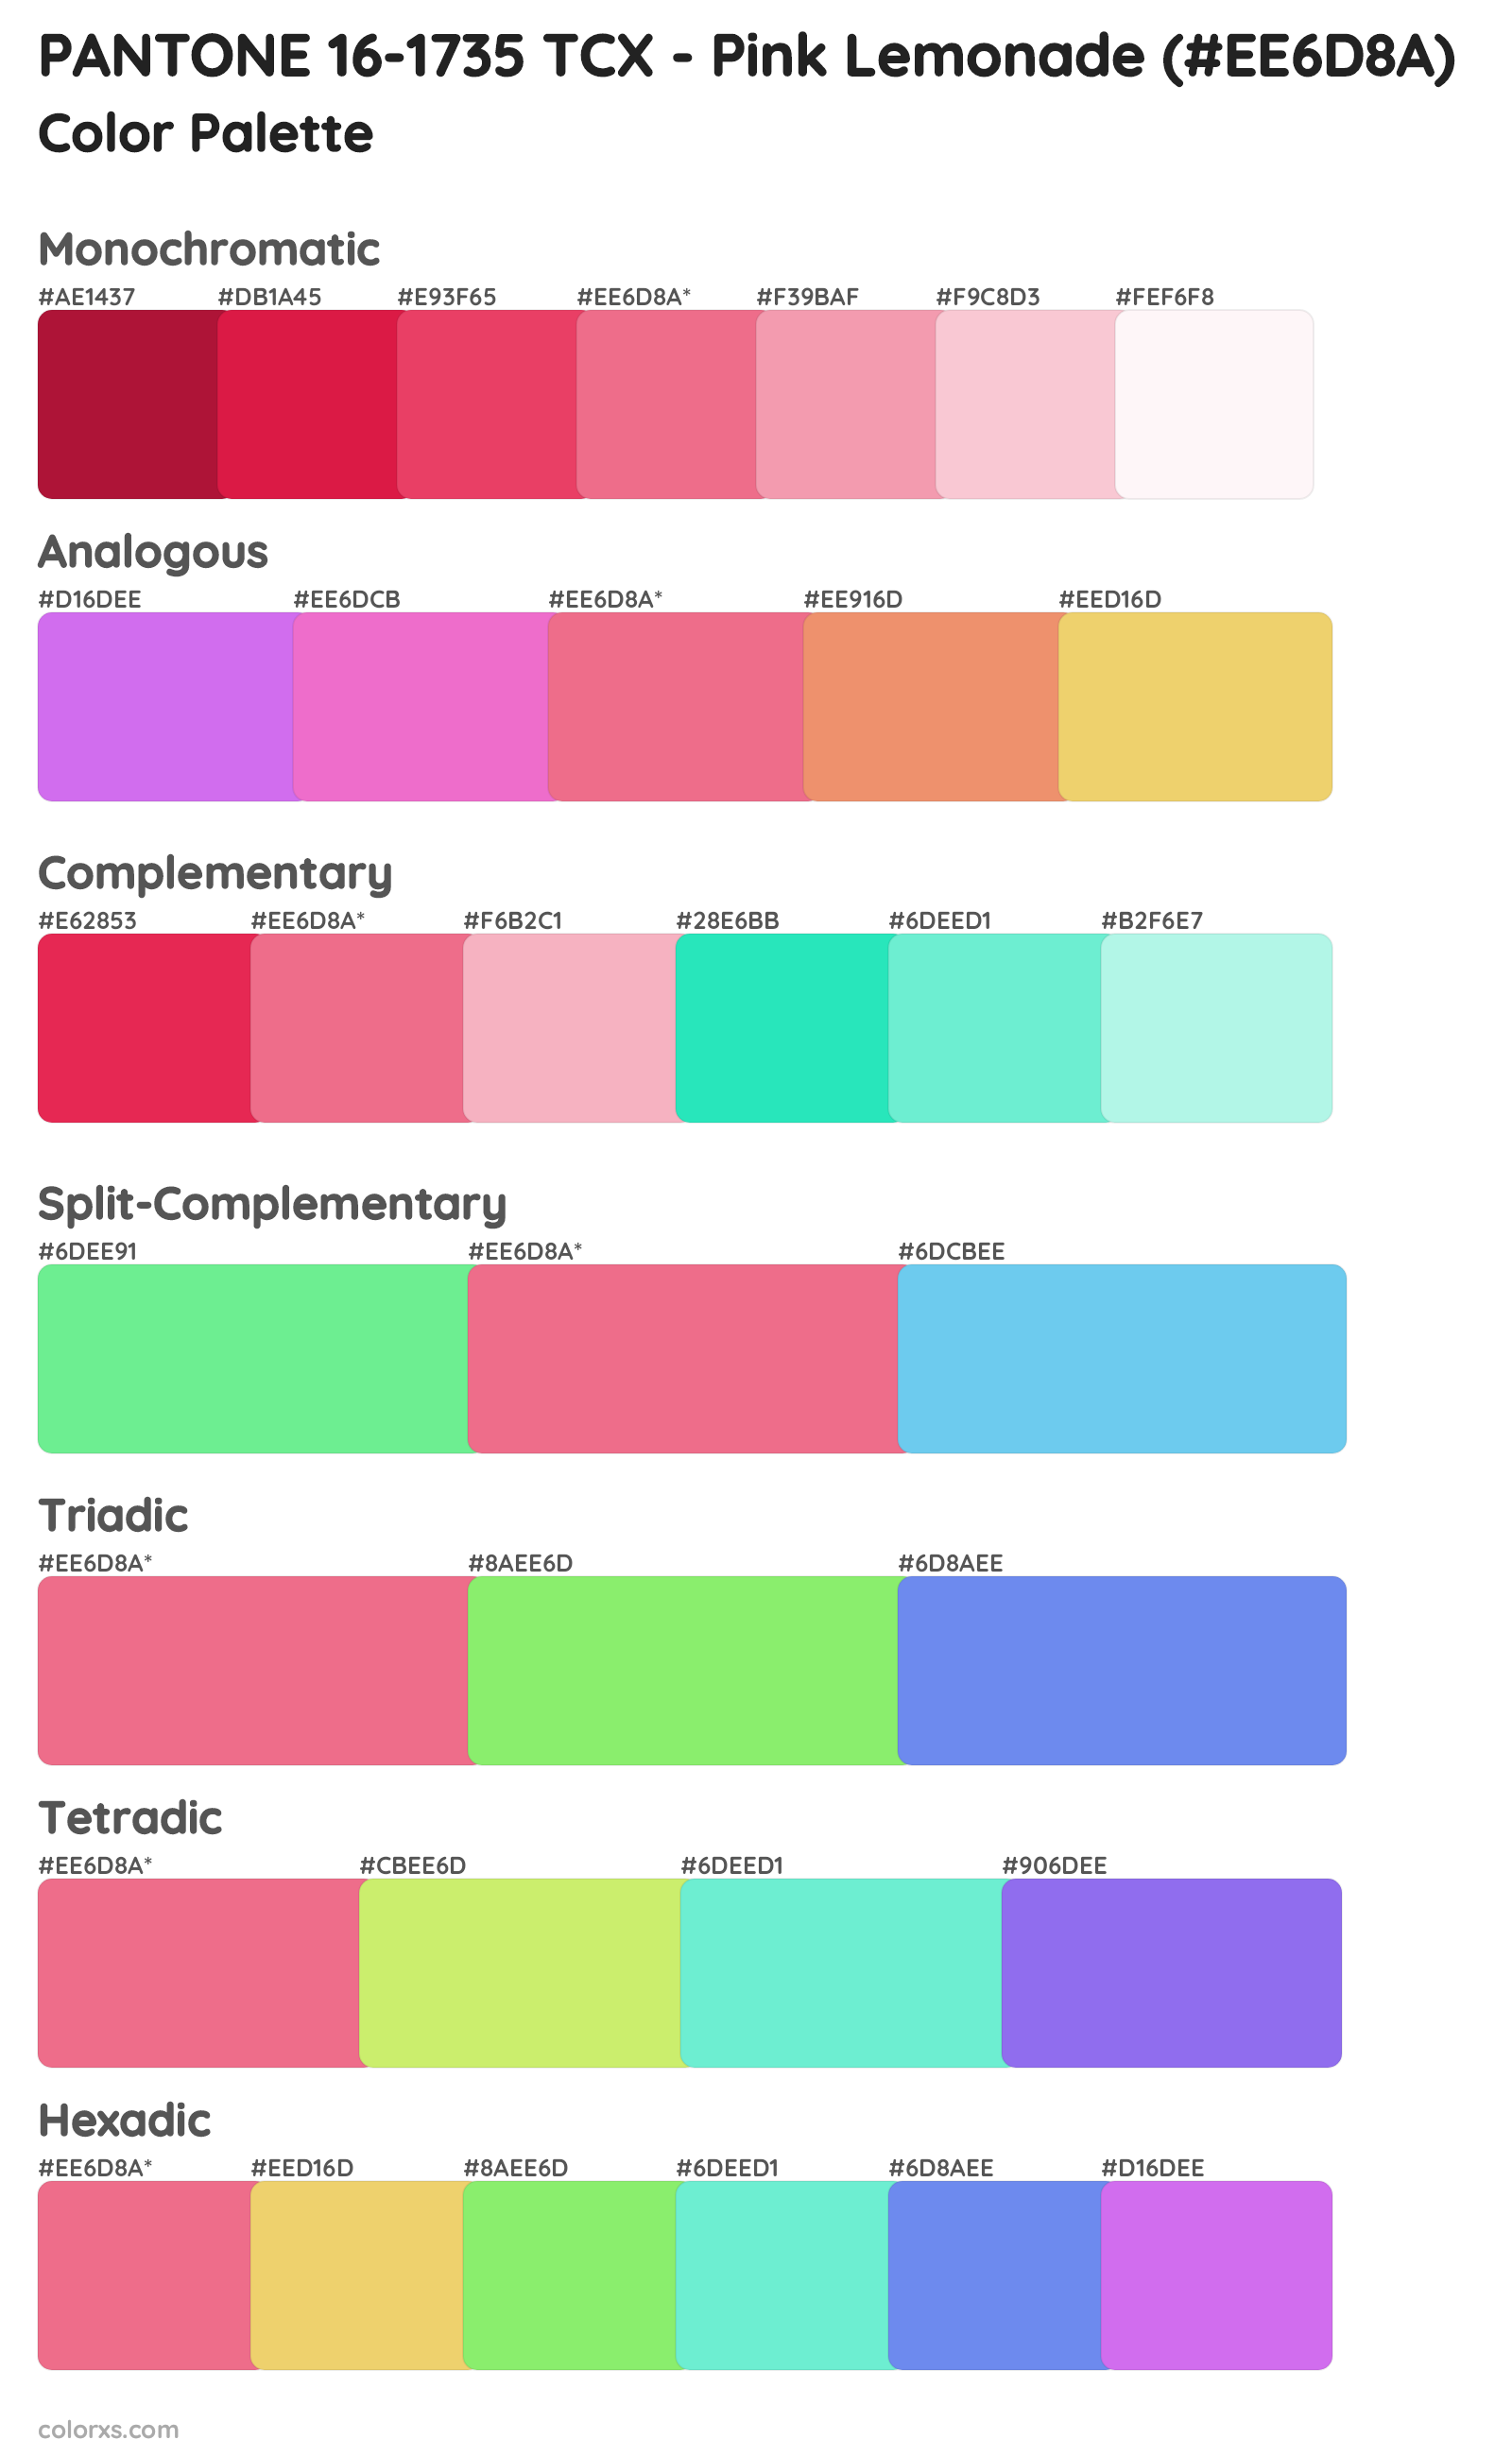 PANTONE 16-1735 TCX - Pink Lemonade Color Scheme Palettes